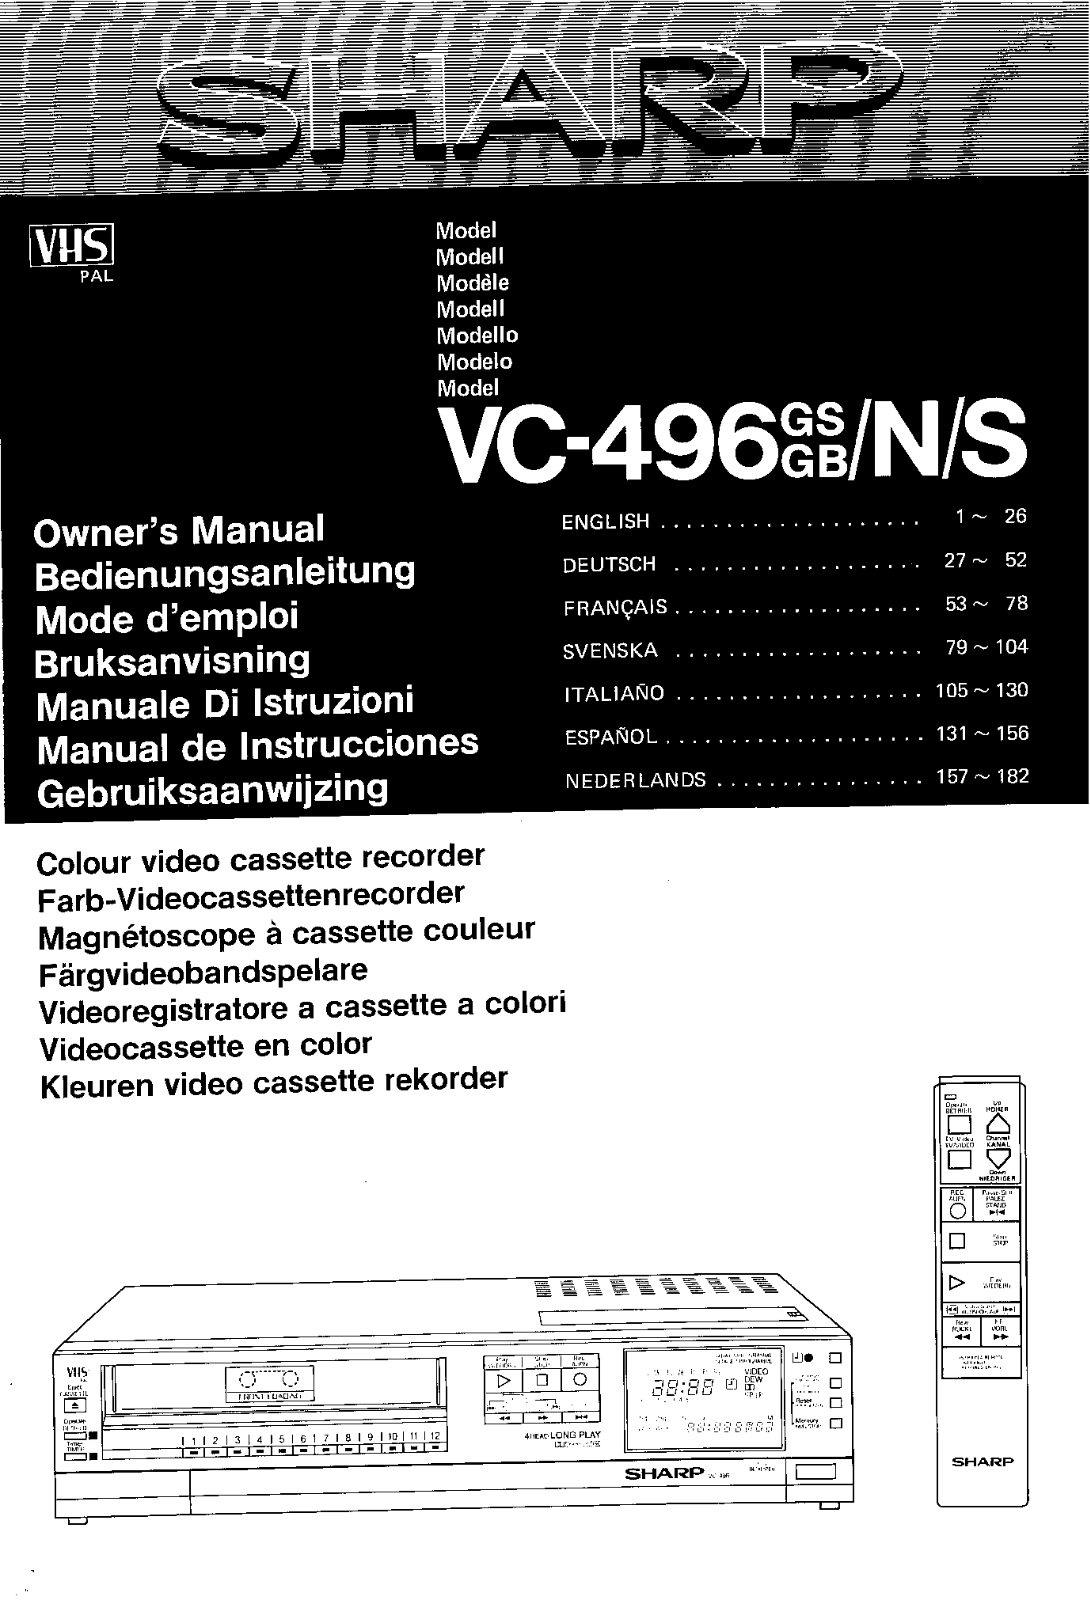 Sharp VC-496GS, VC-496GB, VC-496N, VC-496 Manual